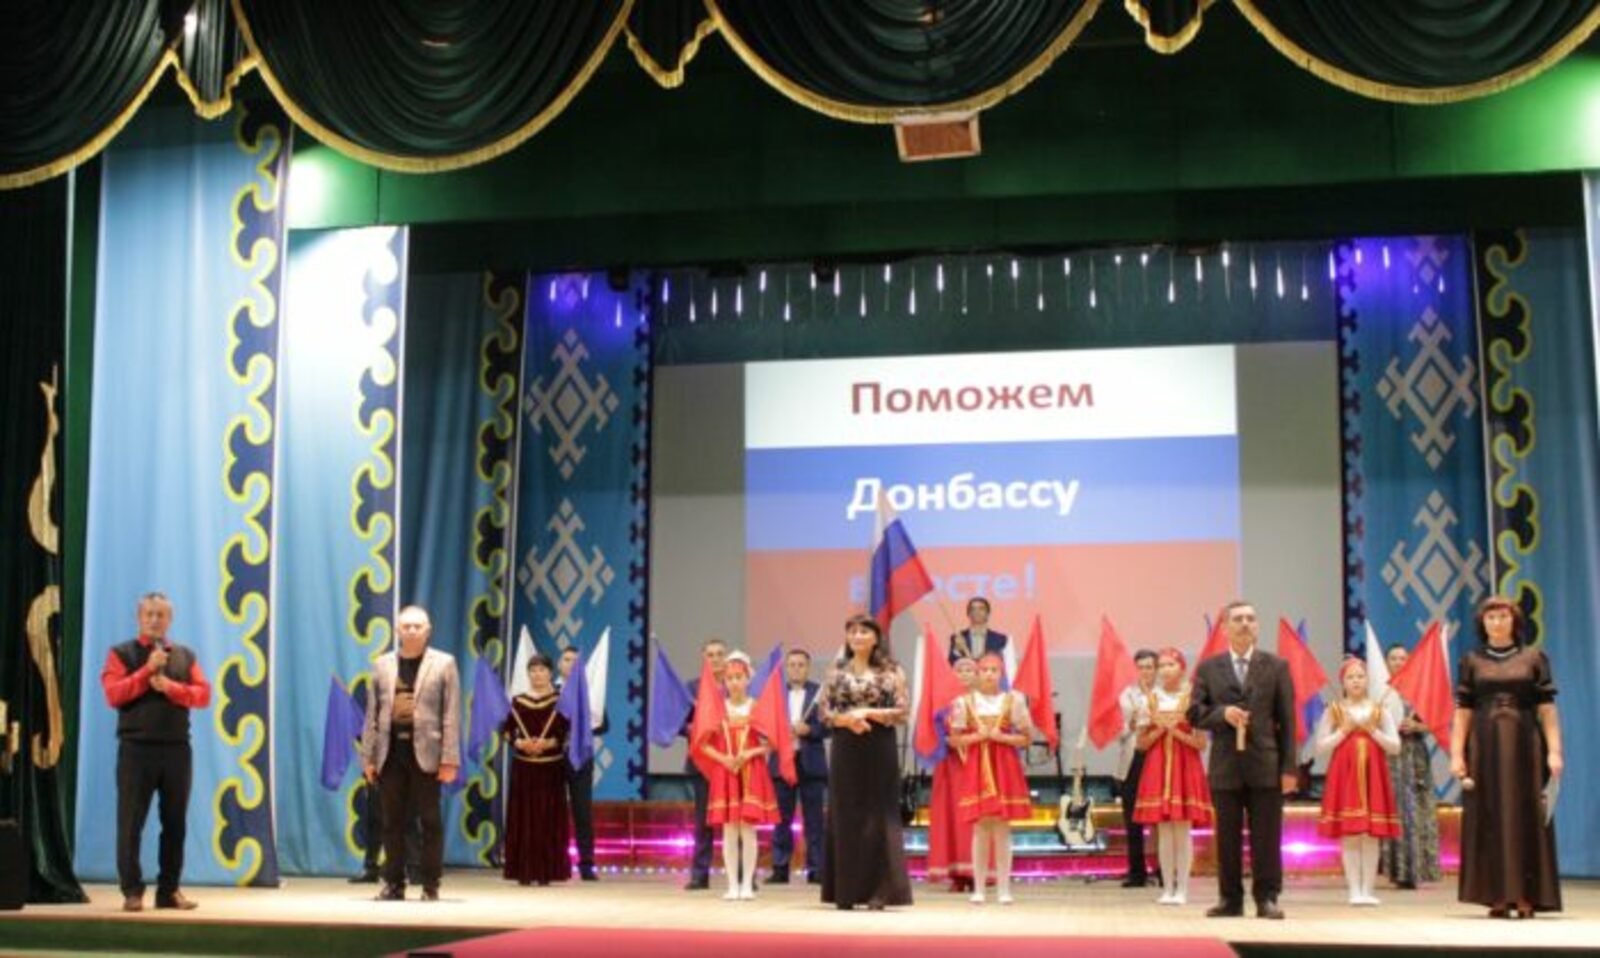 Альшеевские артисты дали благотворительный концерт в помощь Донбассу